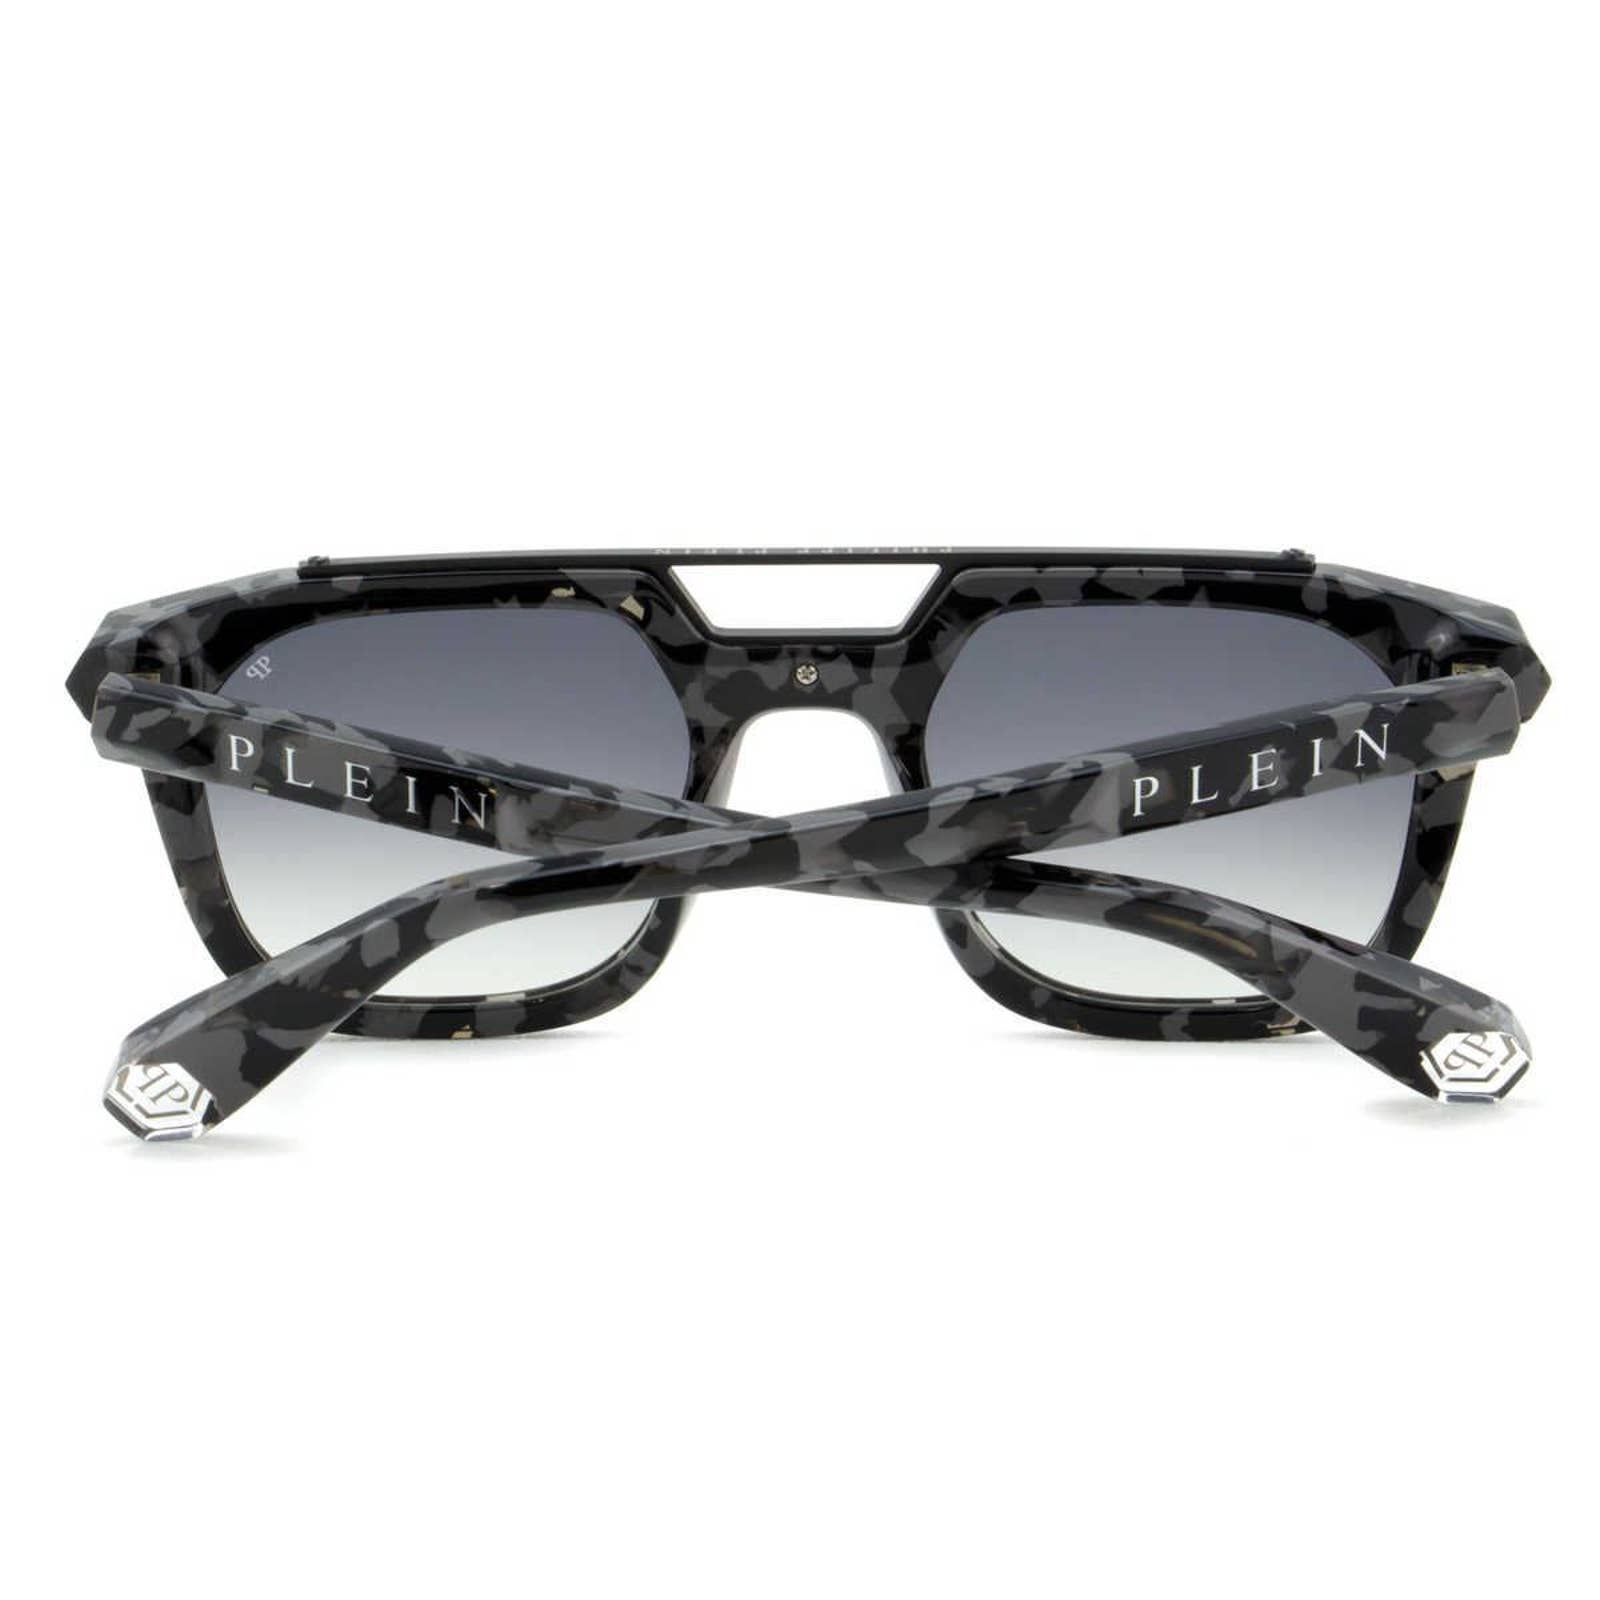 Men Camo Square Sunglasses SPP001M-0721 Gray Lens